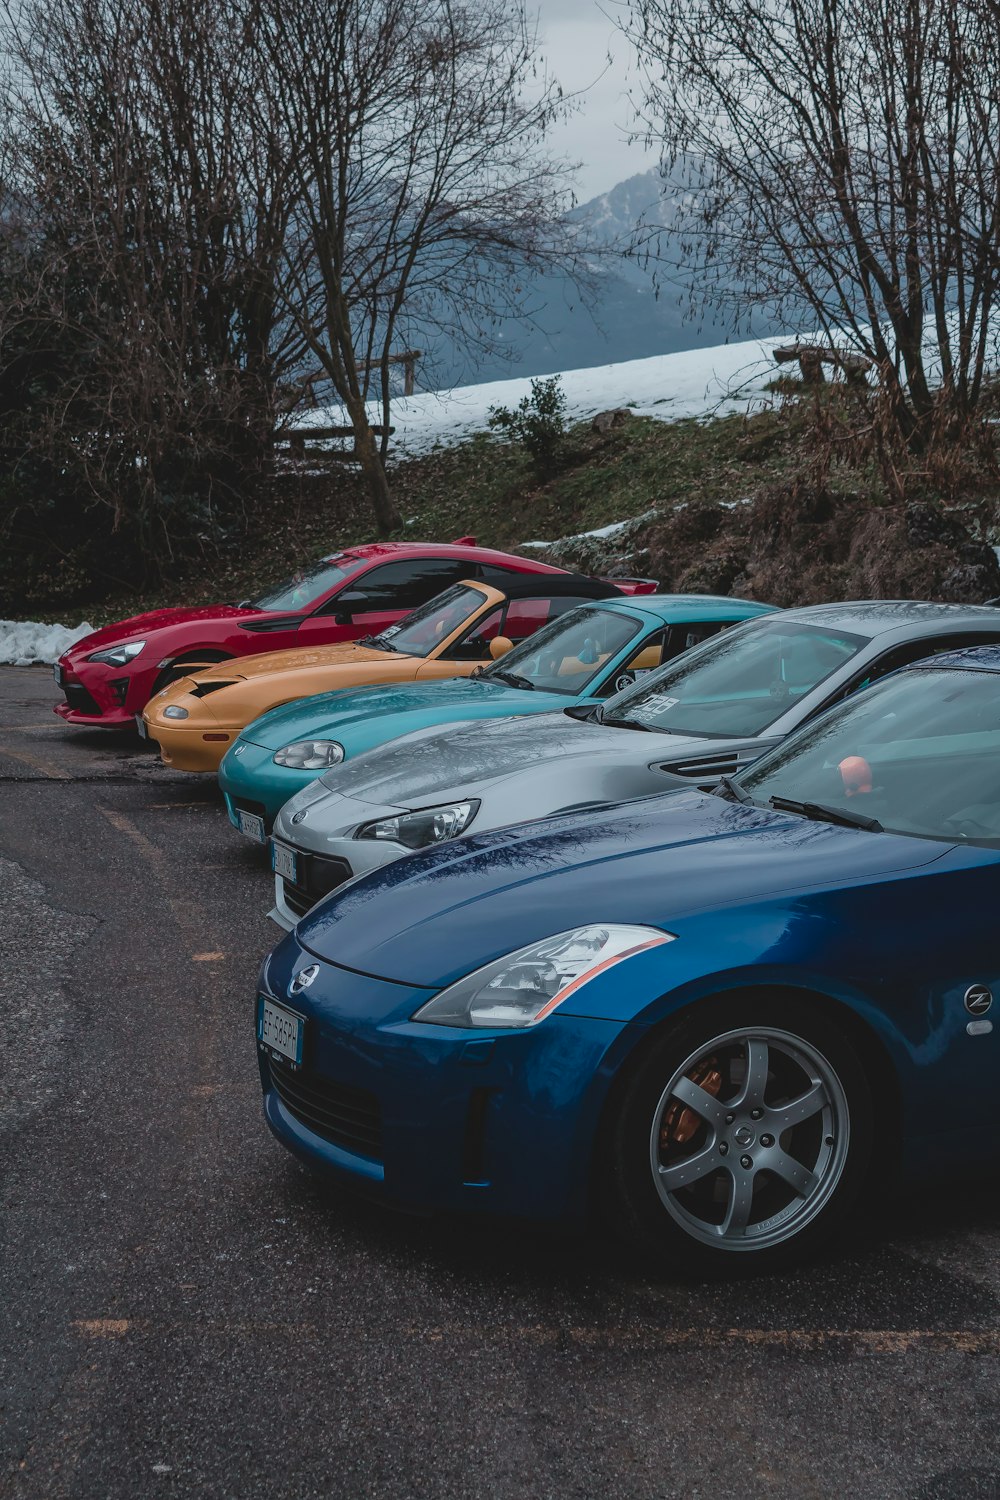 Cinq véhicules de couleurs assorties sur la route